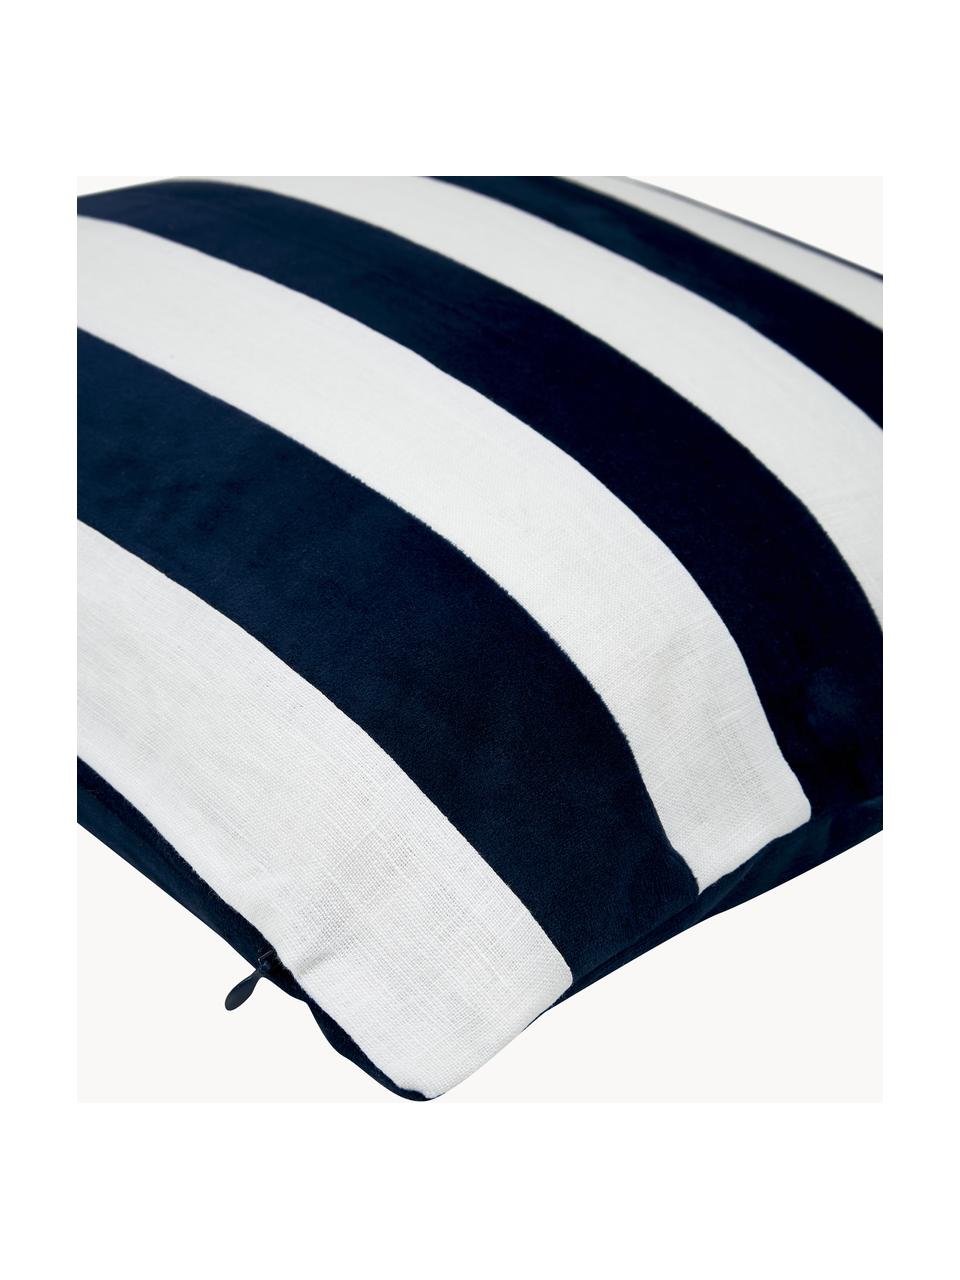 Poszewka na poduszkę z aksamitu i lnu Maui, Ciemny niebieski, biały, S 45 x D 45 cm